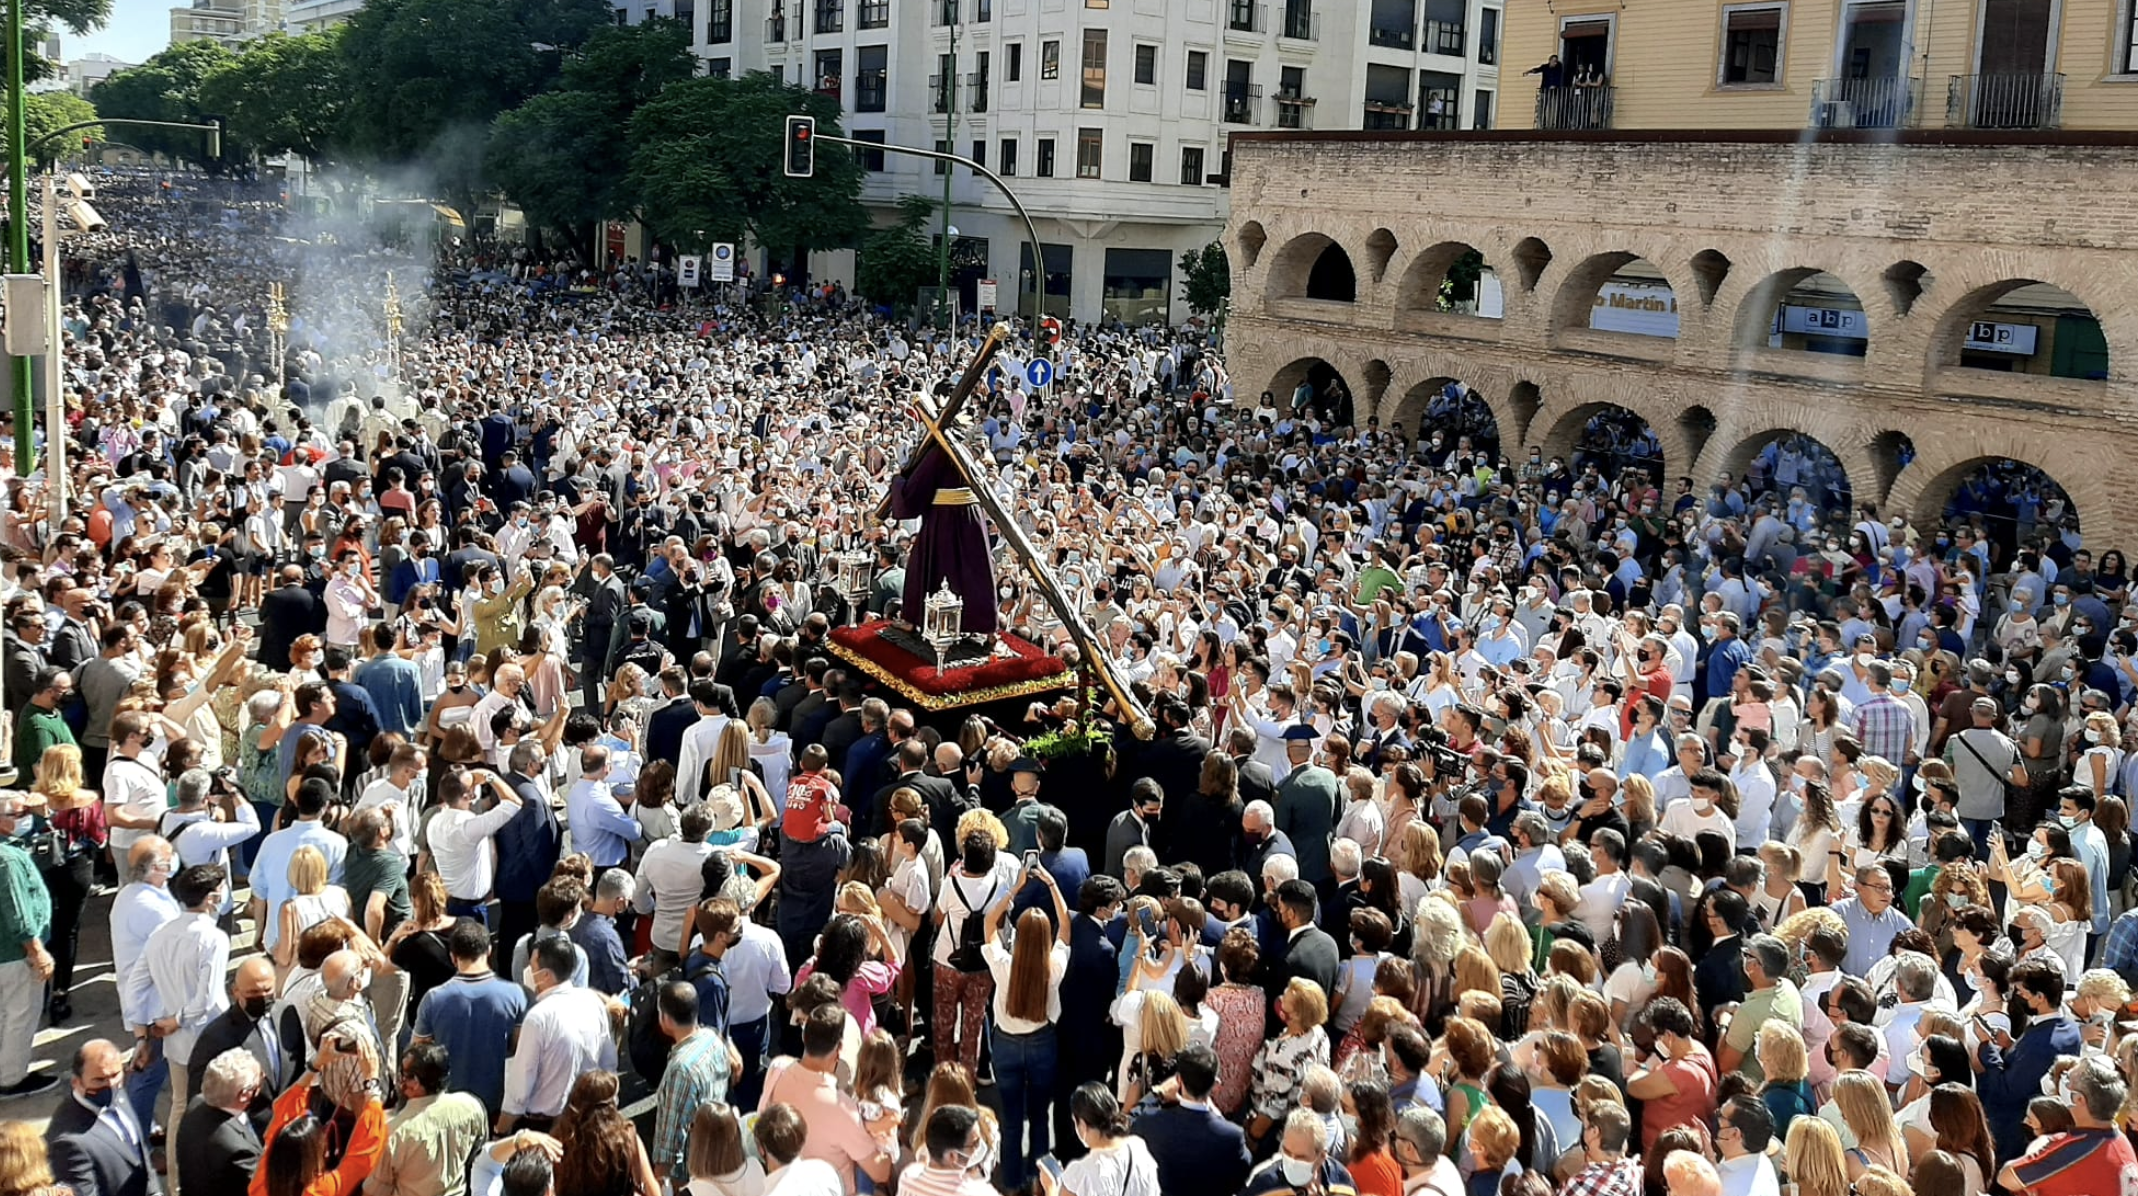 El Gran Poder congrega a unas 200.000 personas durante su procesión extraordinaria